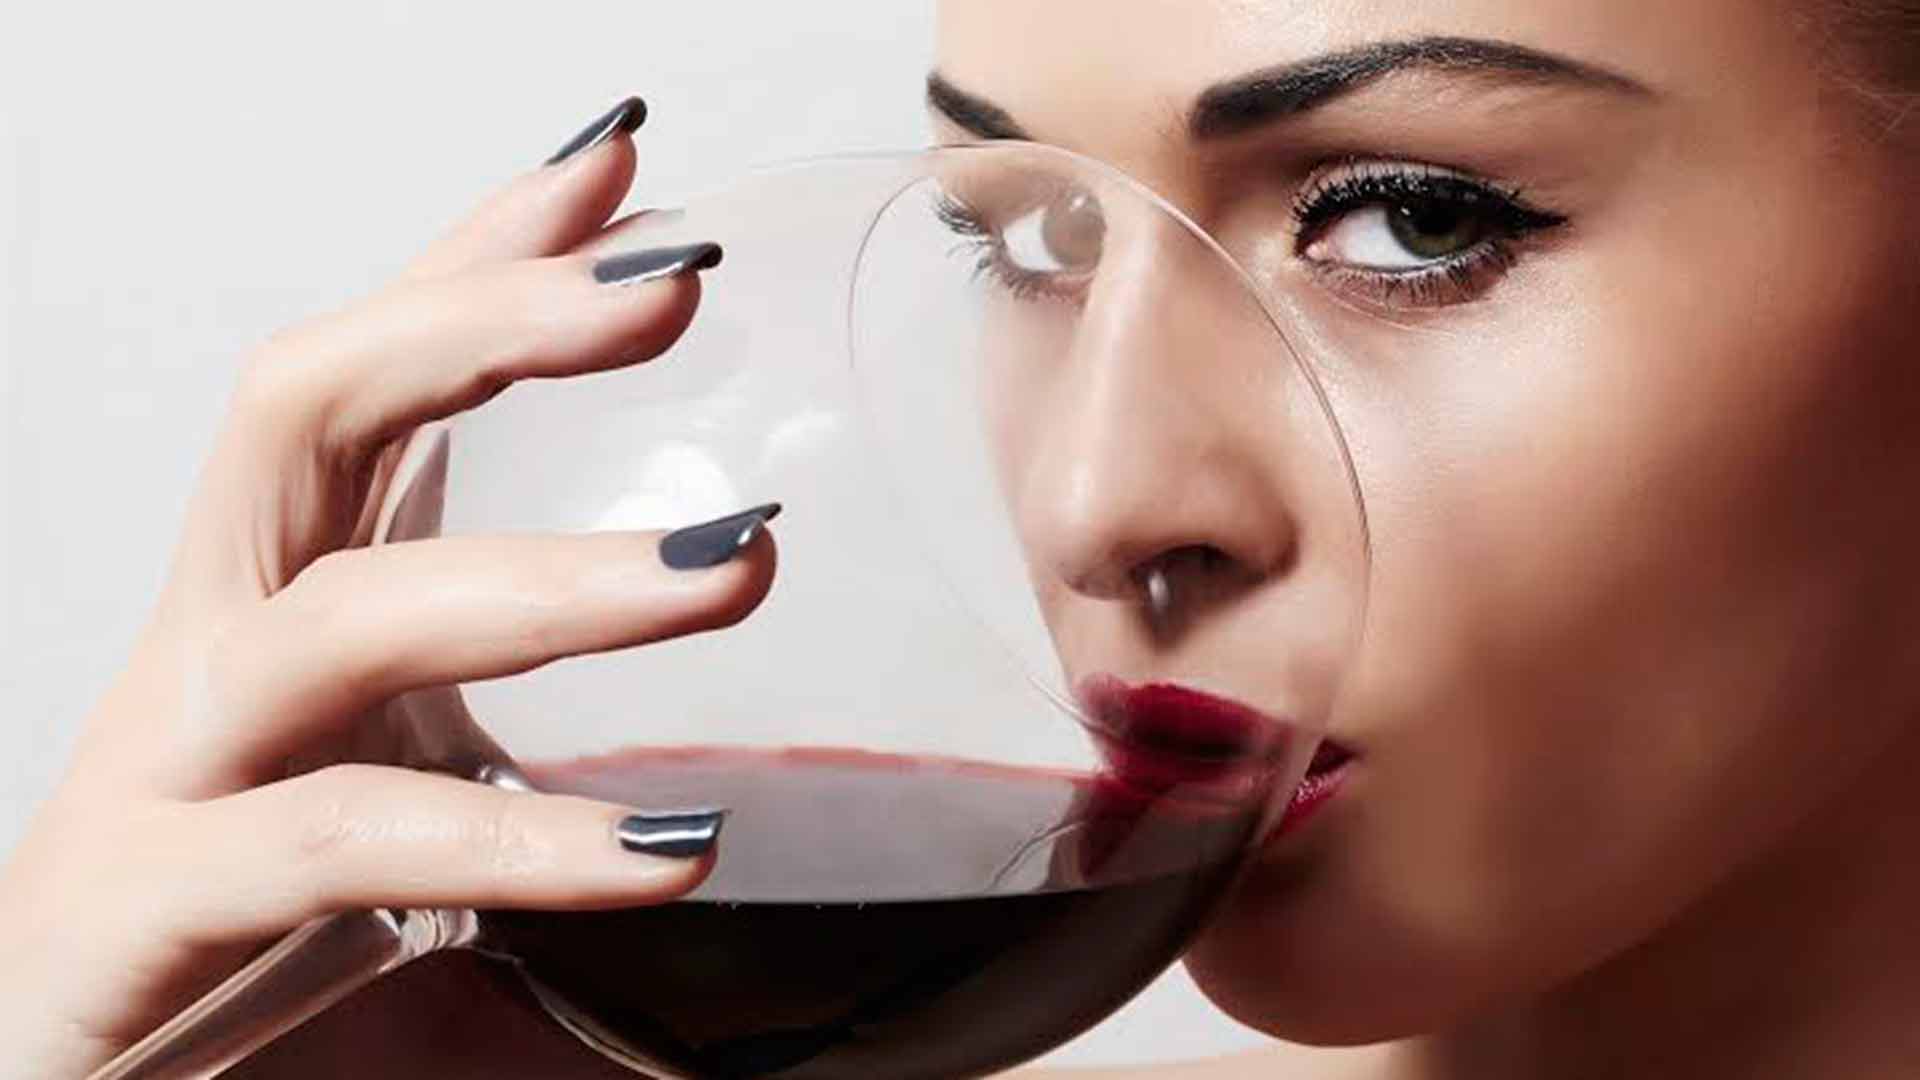 Afinal, beber uma tacinha de vinho emagrece mesmo, ou não?